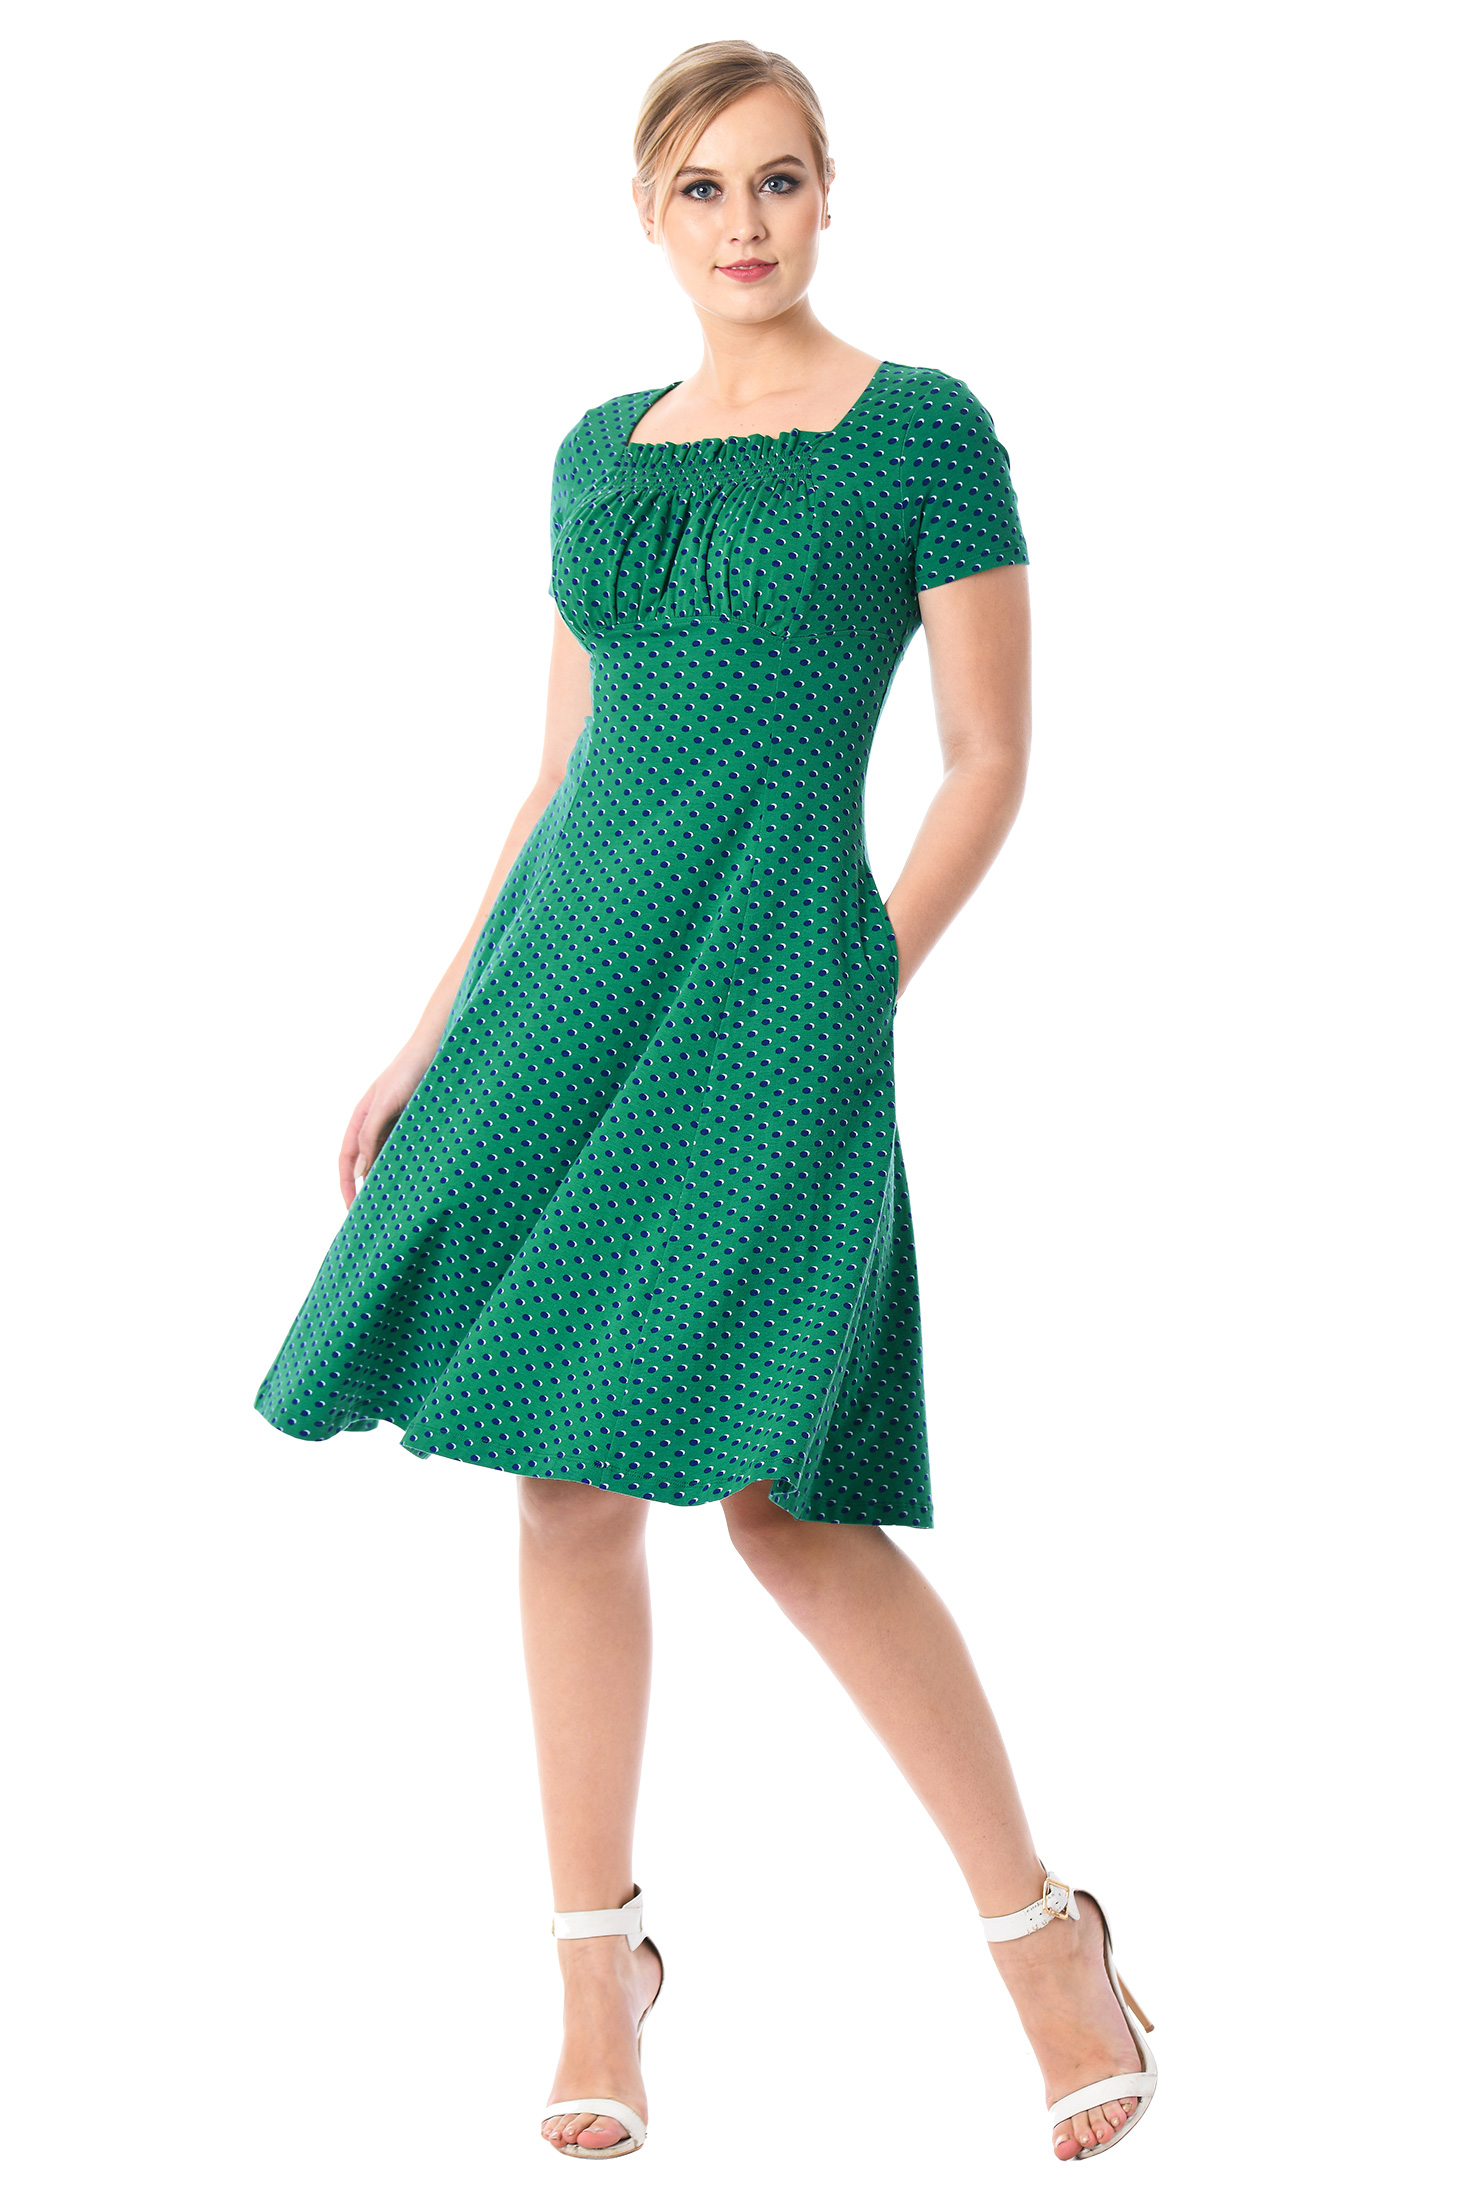 eShakti Women's Ruched bodice polka dot cotton knit dress